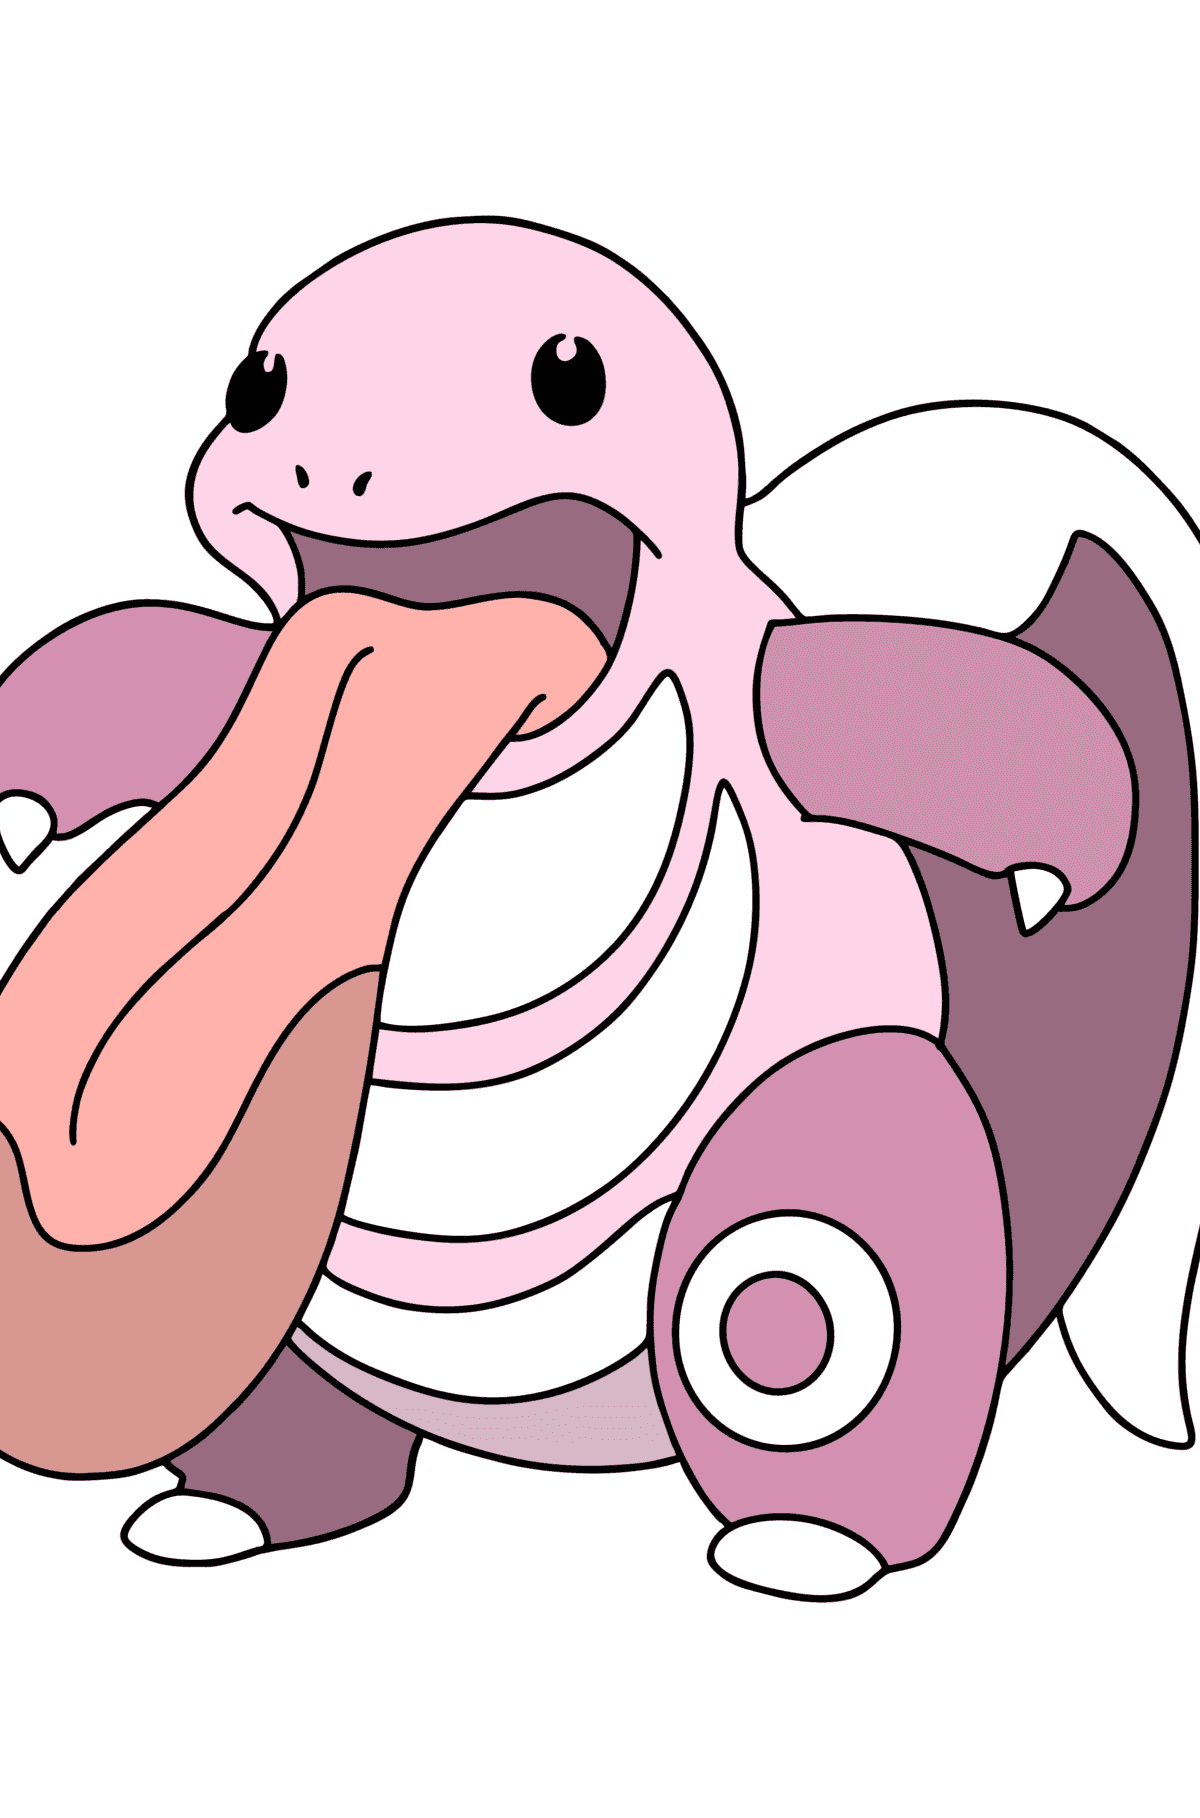 Målarbild Pokémon Go Licking - Målarbilder För barn